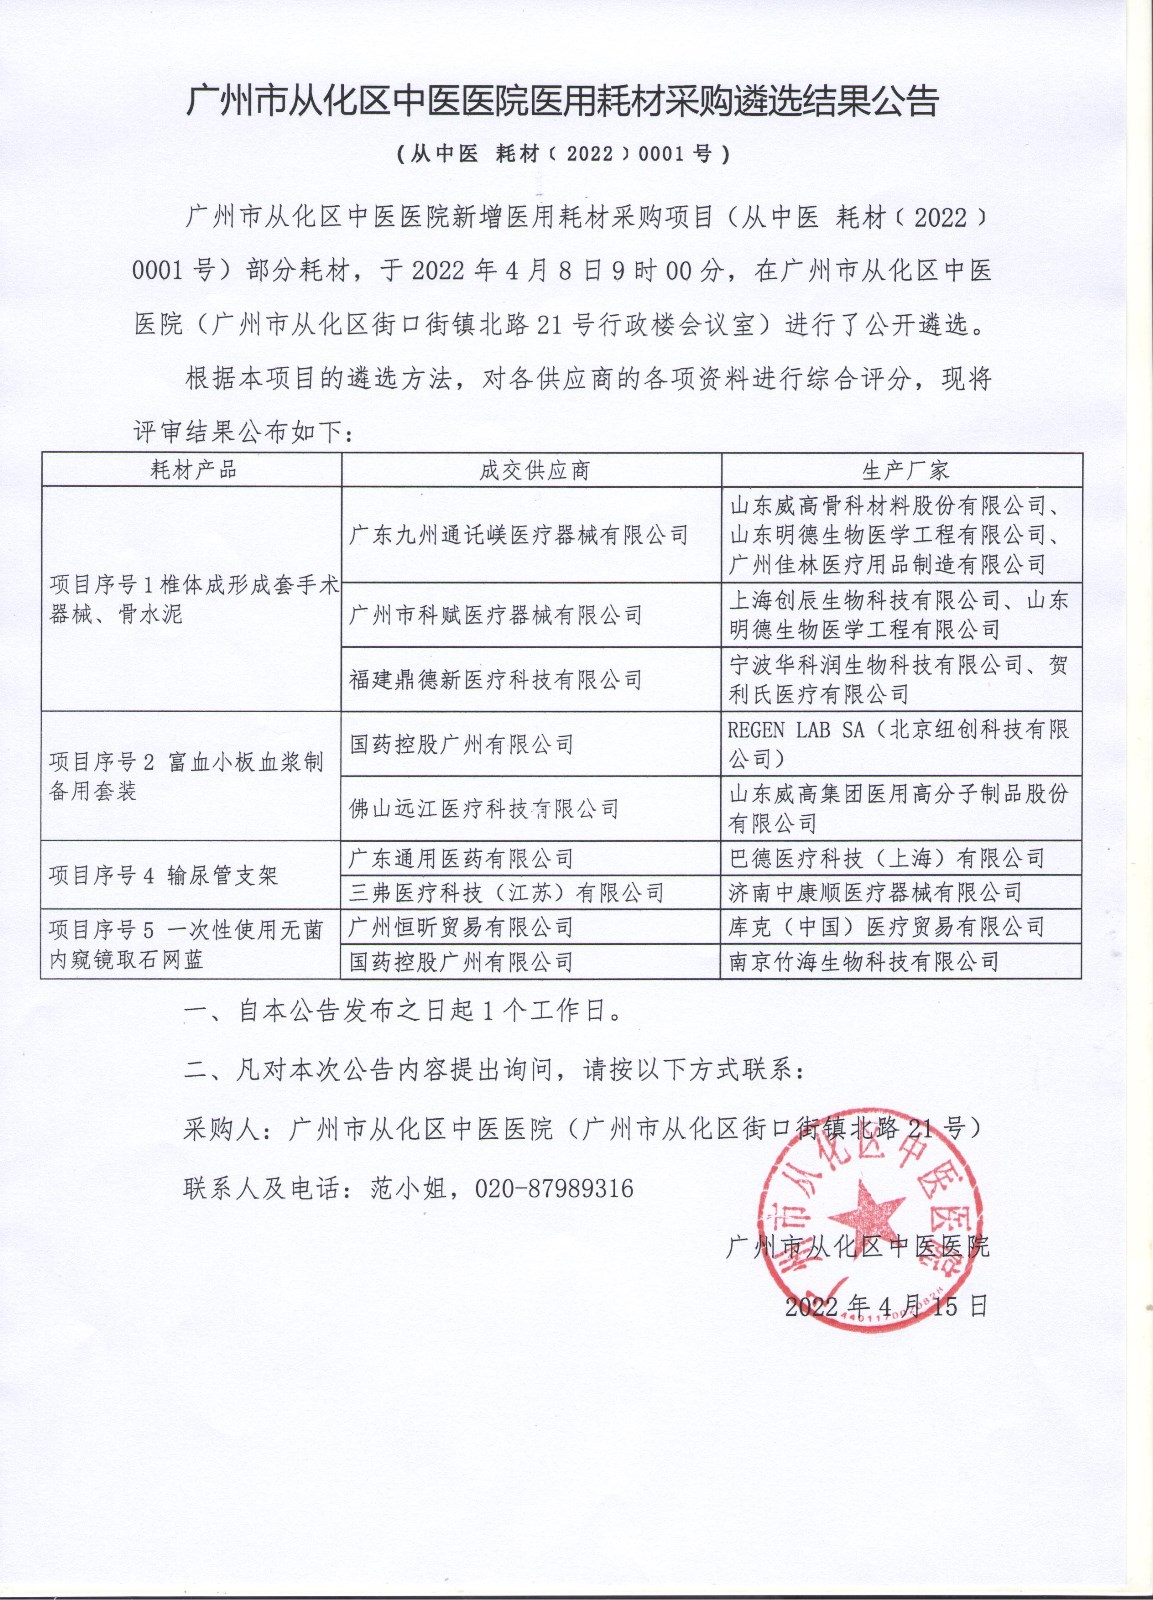 广州市从化区中医医院医用耗材采购遴选结果公告 001.jpg